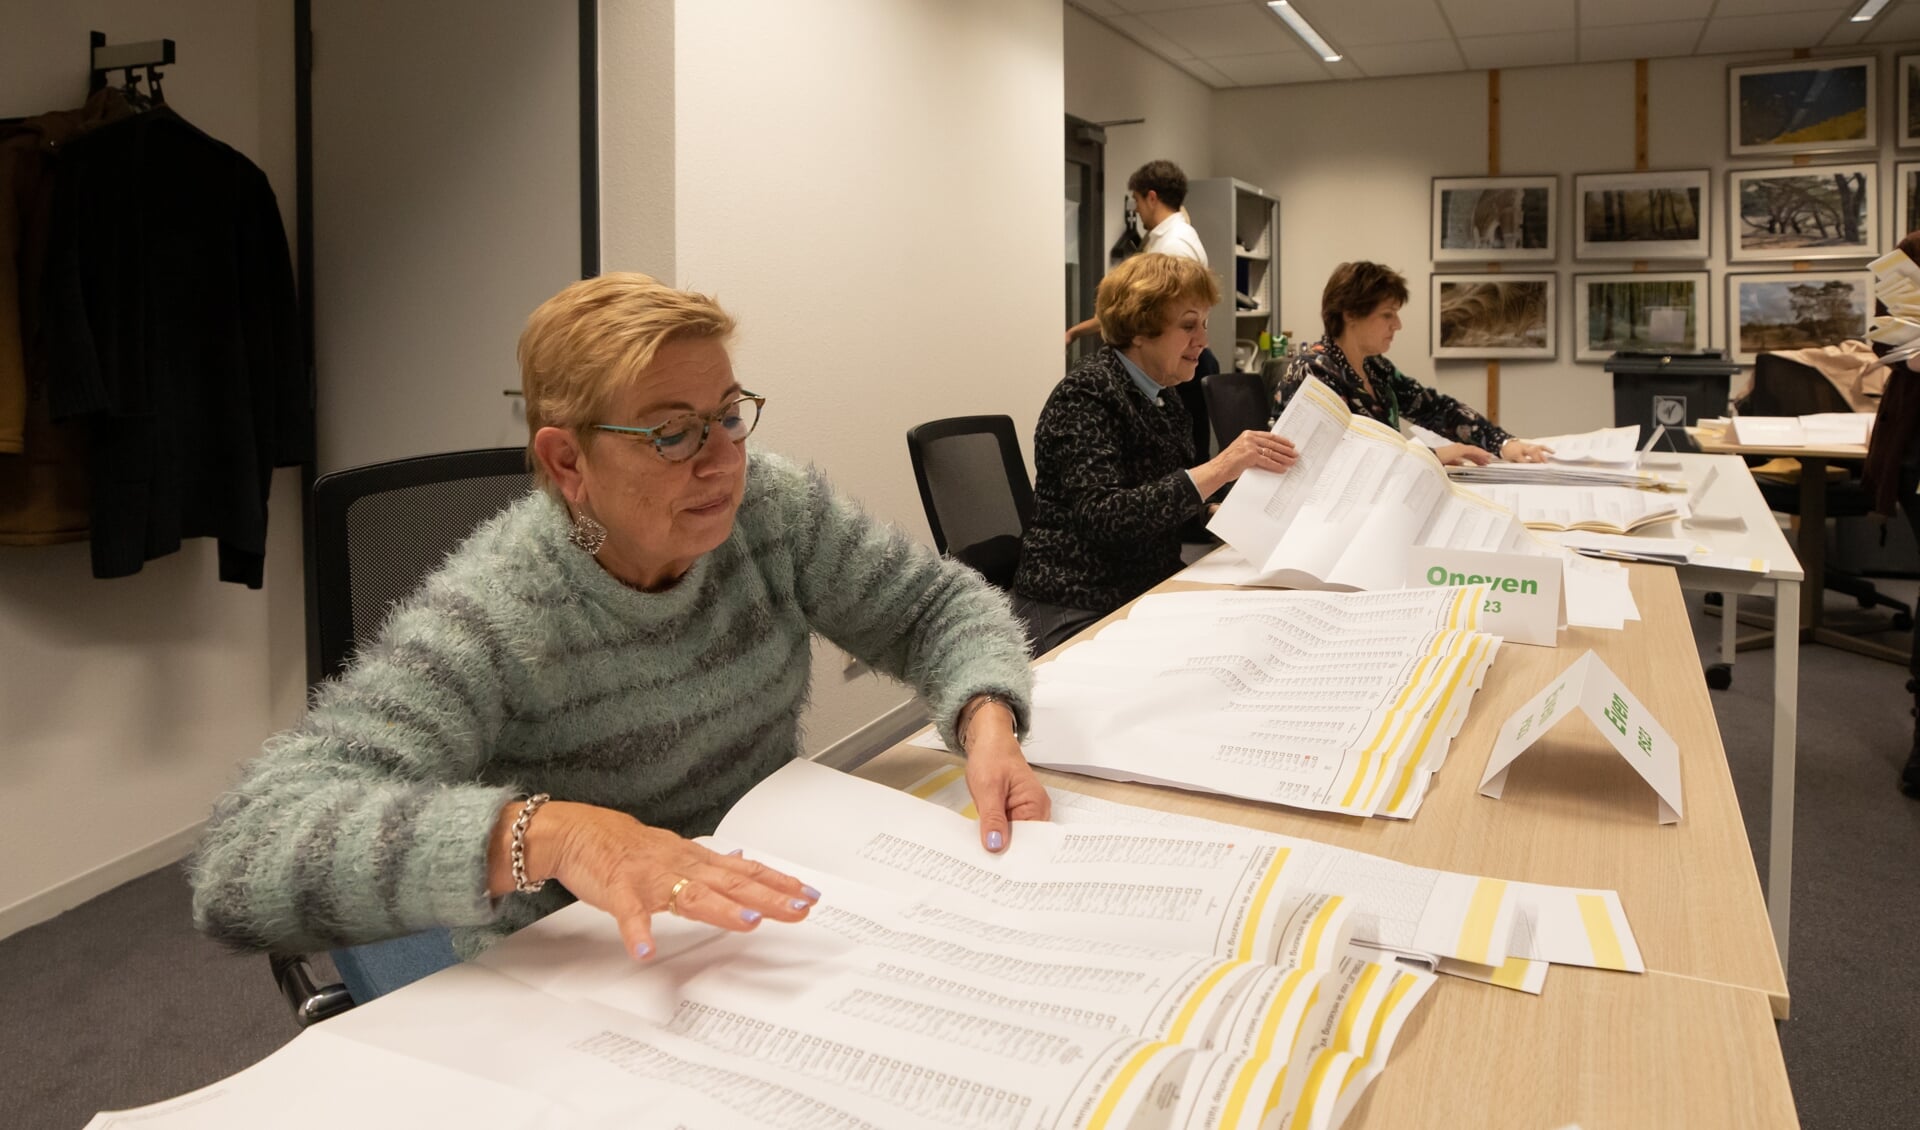 Stemmen tellen voor het Waterschap en de Provinciale verkiezingen.
Ook in het gemeentehuis van Baarn.
Vanavond wordt er geteld op partij, morgen gaat de telling verder op stemvoorkeuren.
